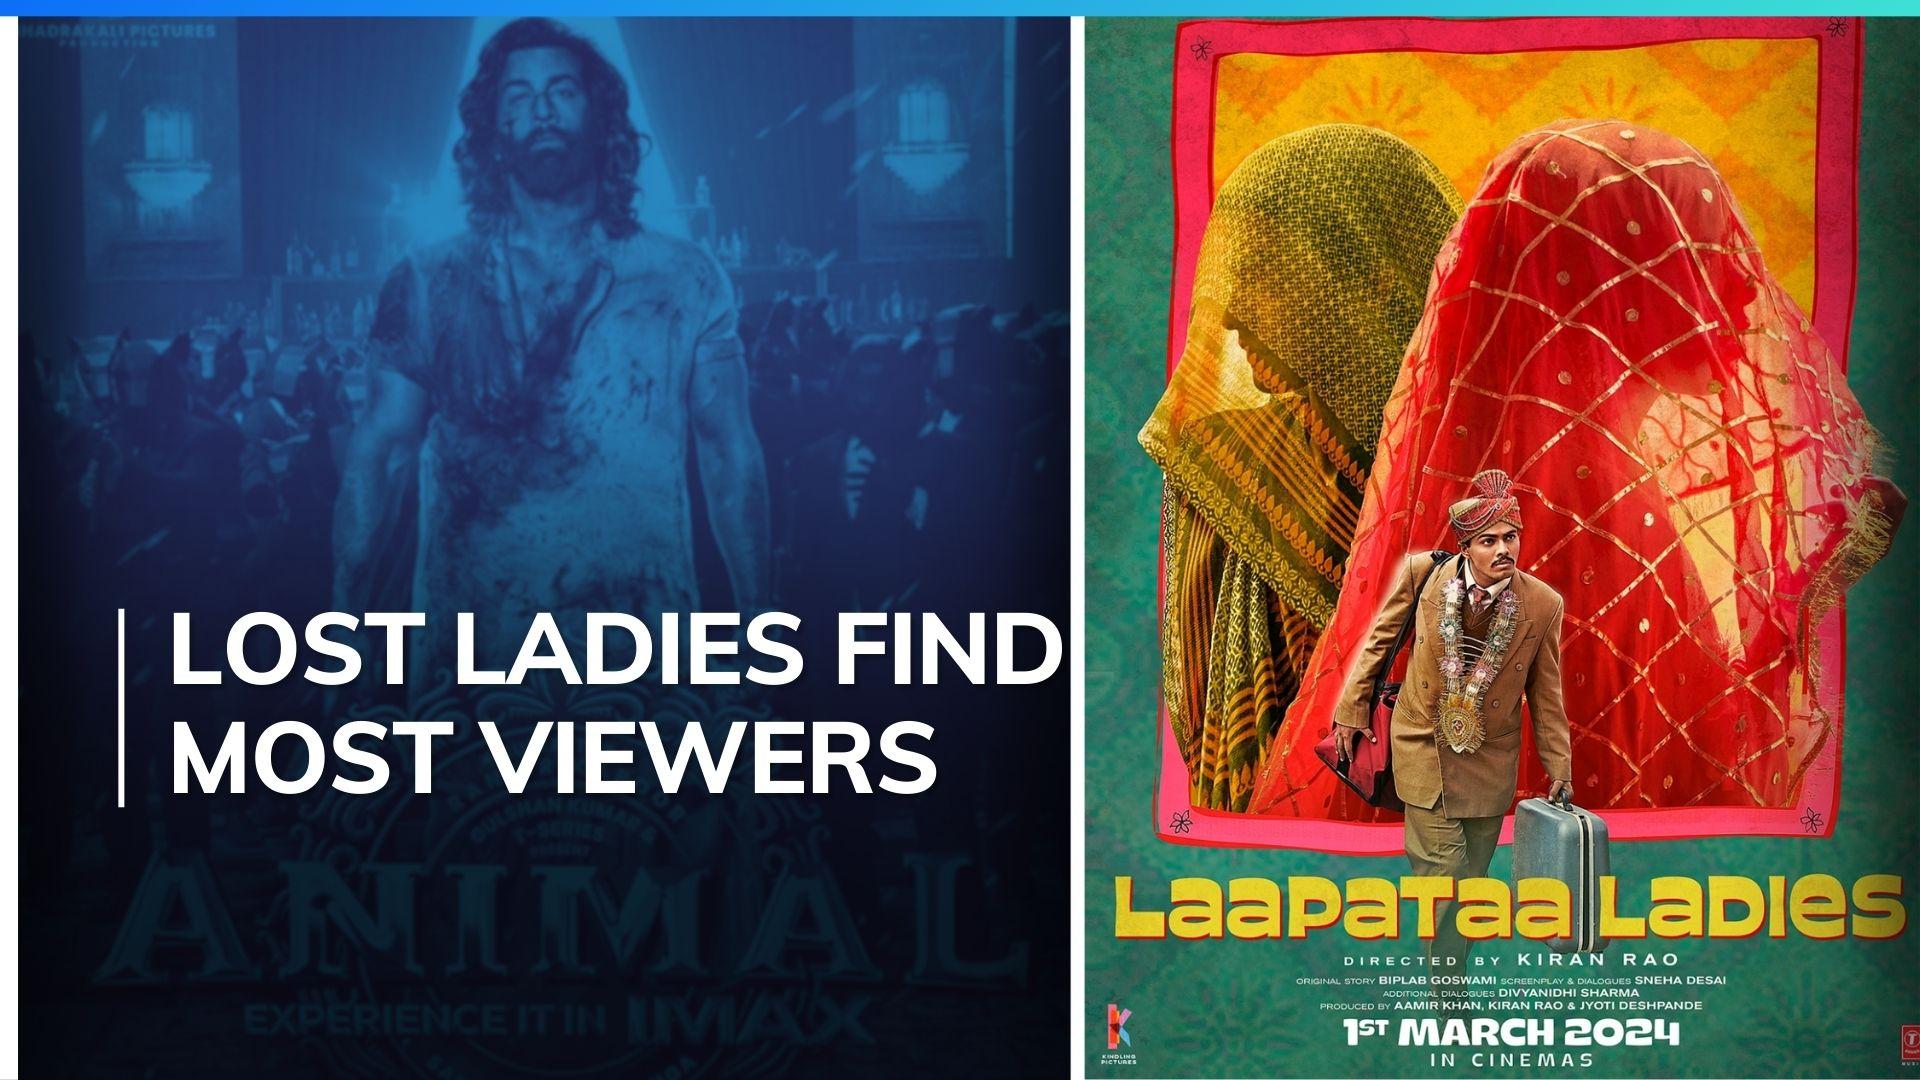 ʼLaapataa Ladiesʼ surpasses Ranbir Kapoorʼs ʼAnimalʼ viewership on Netflix within 2 months